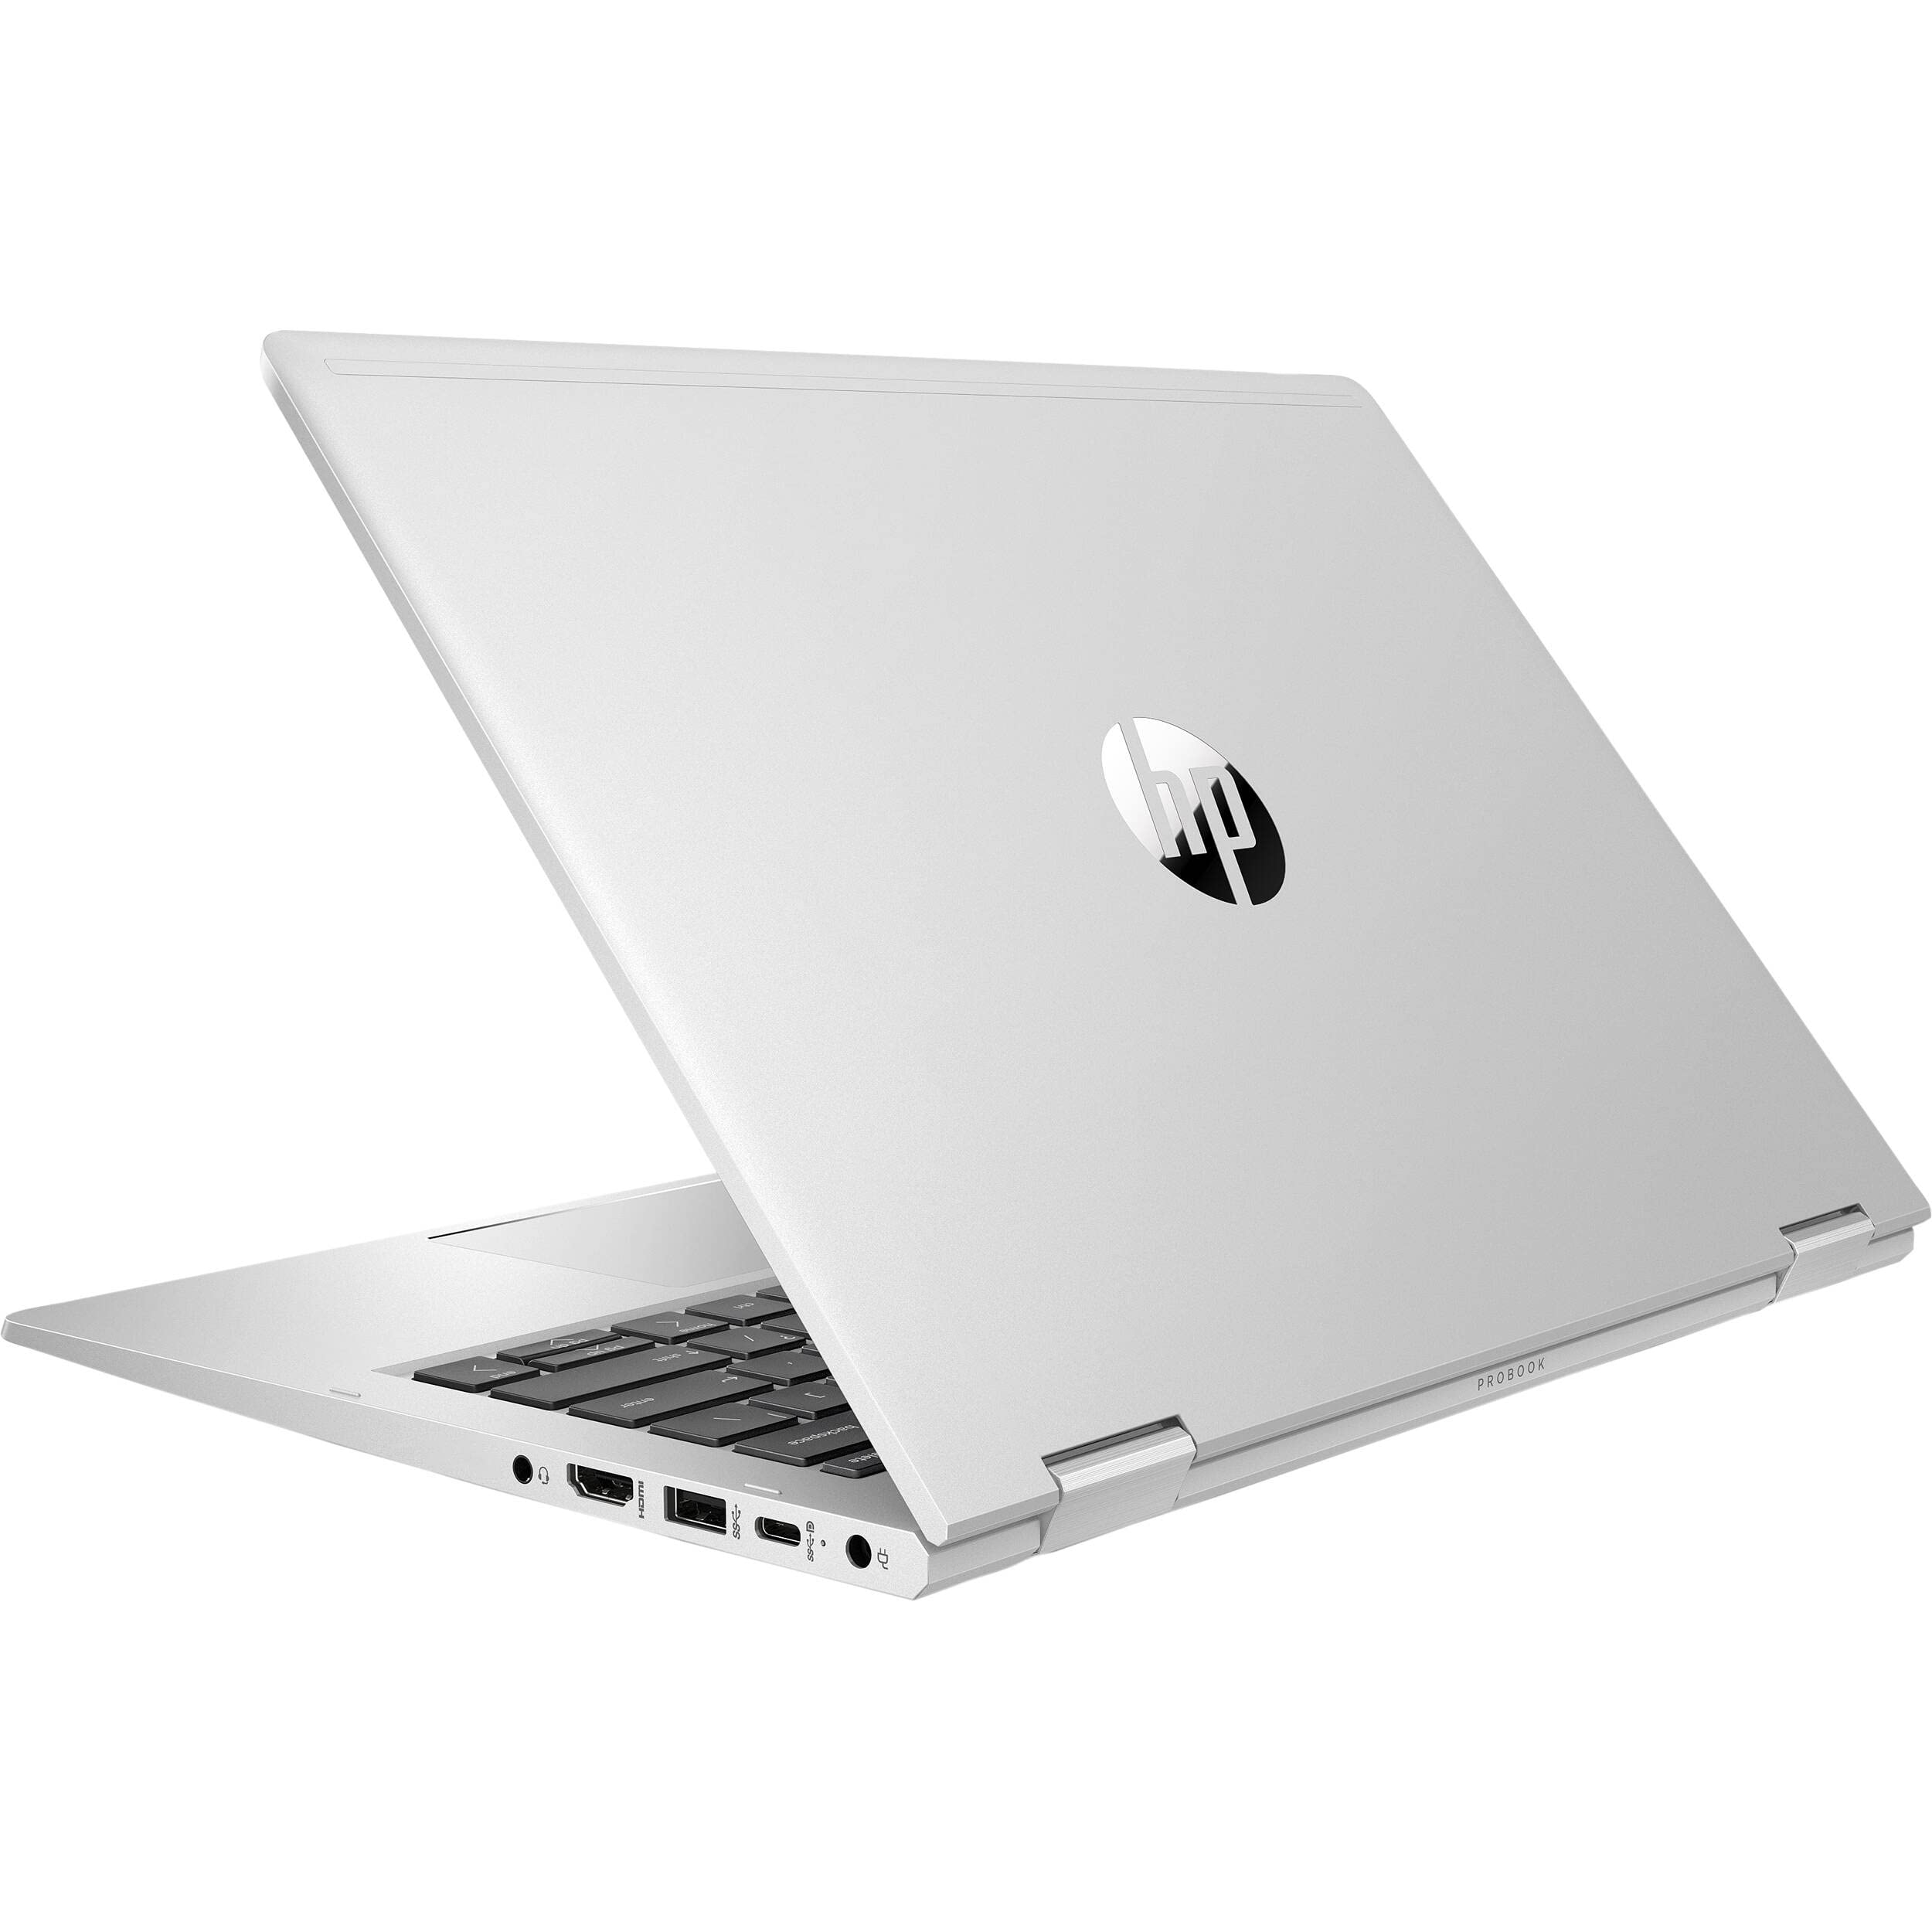 ProBook x360 435 G7 Notebook PC